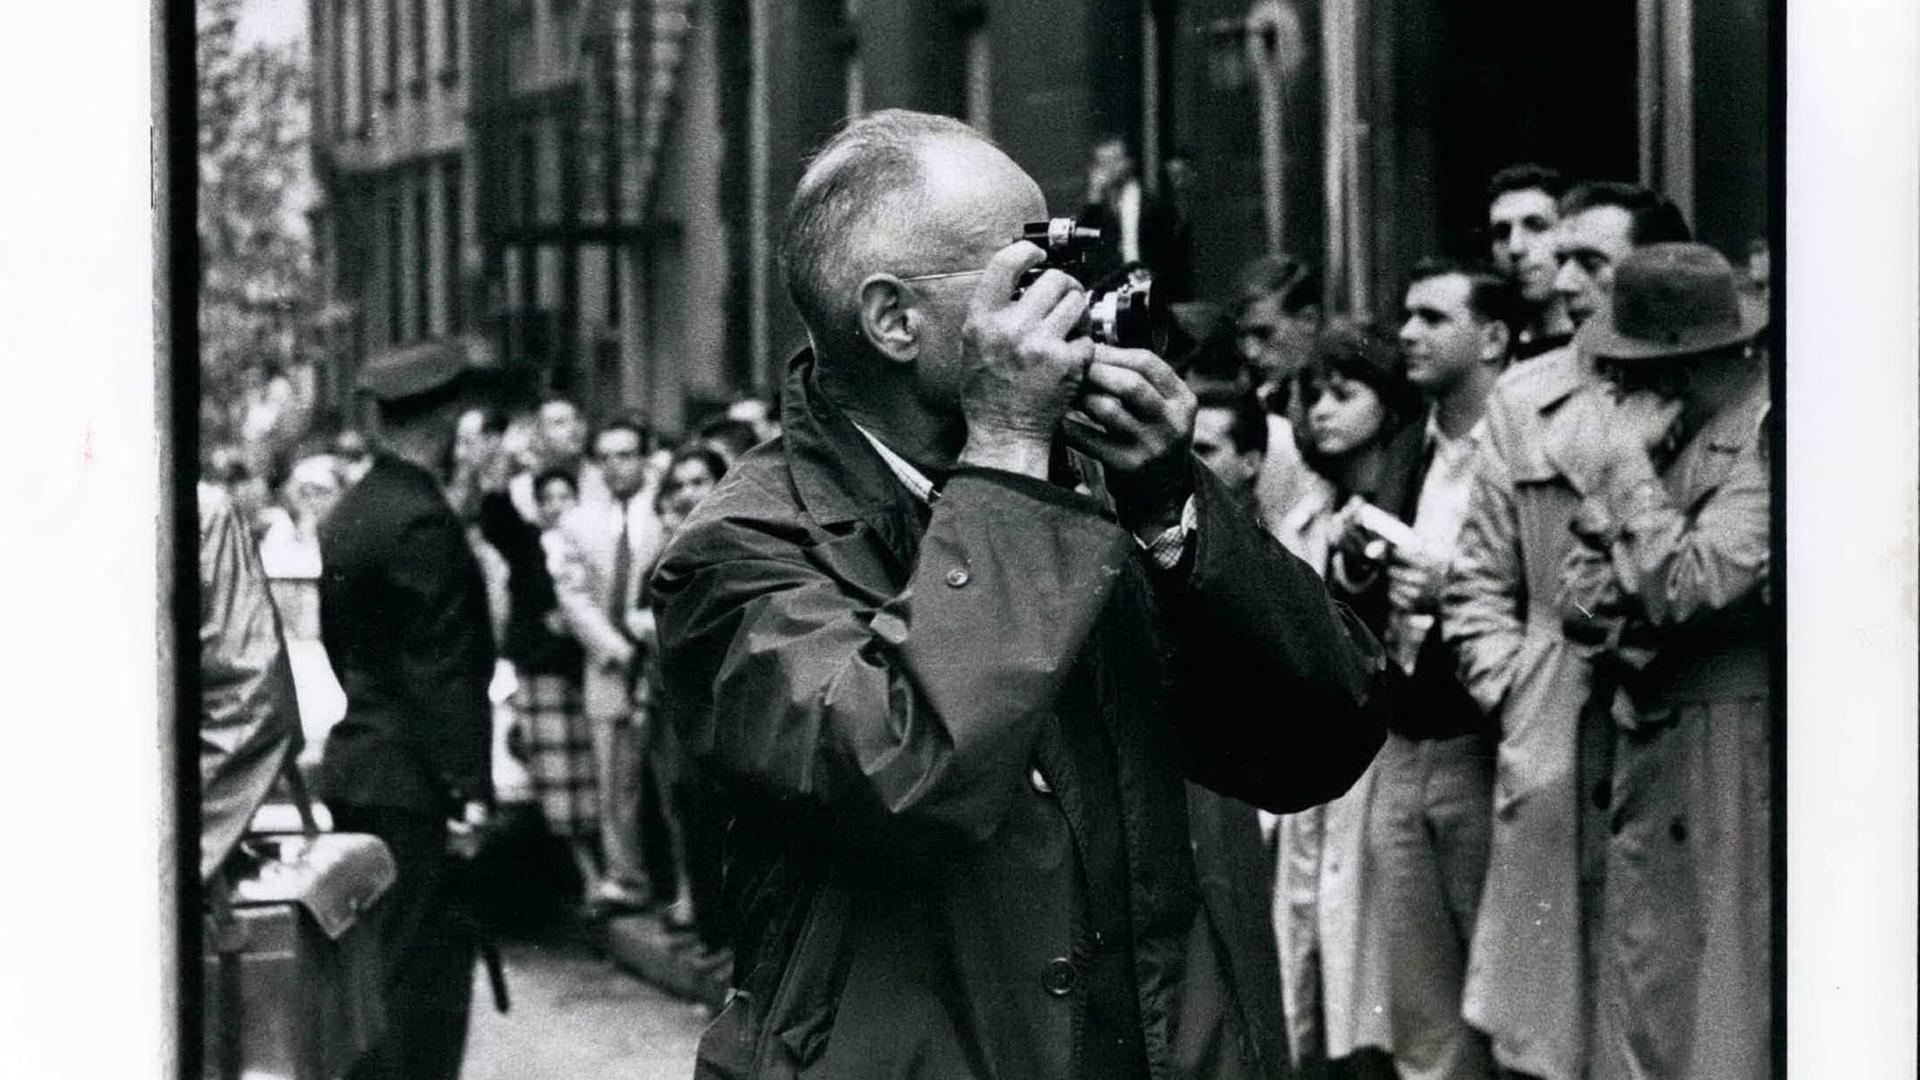 1962 - Henri Cartier - Bresson